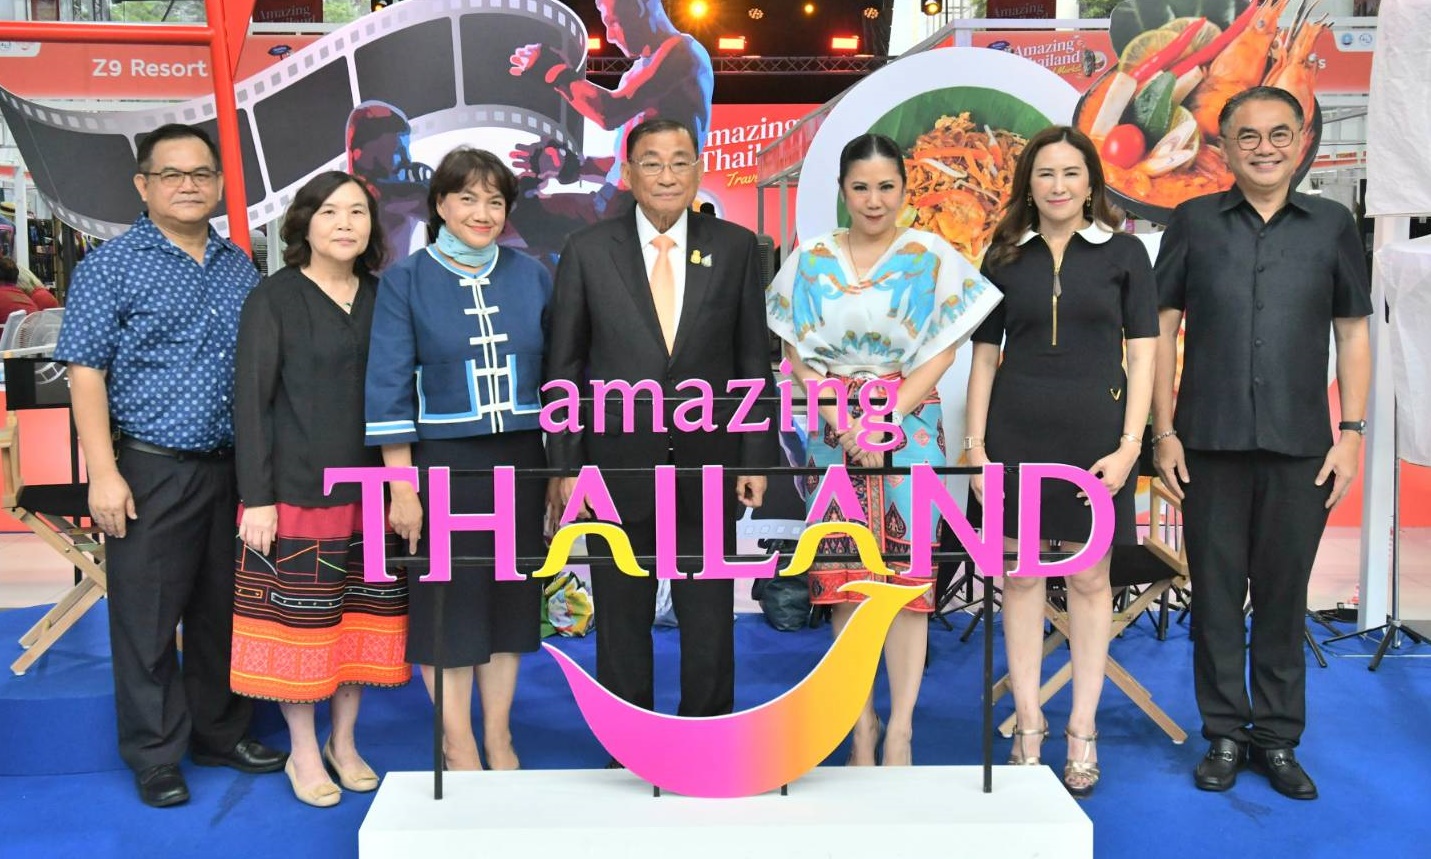 ททท. จัดงาน Amazing Thailand Travel Market รวมดีลลดพิเศษสูงสุดถึง 80%